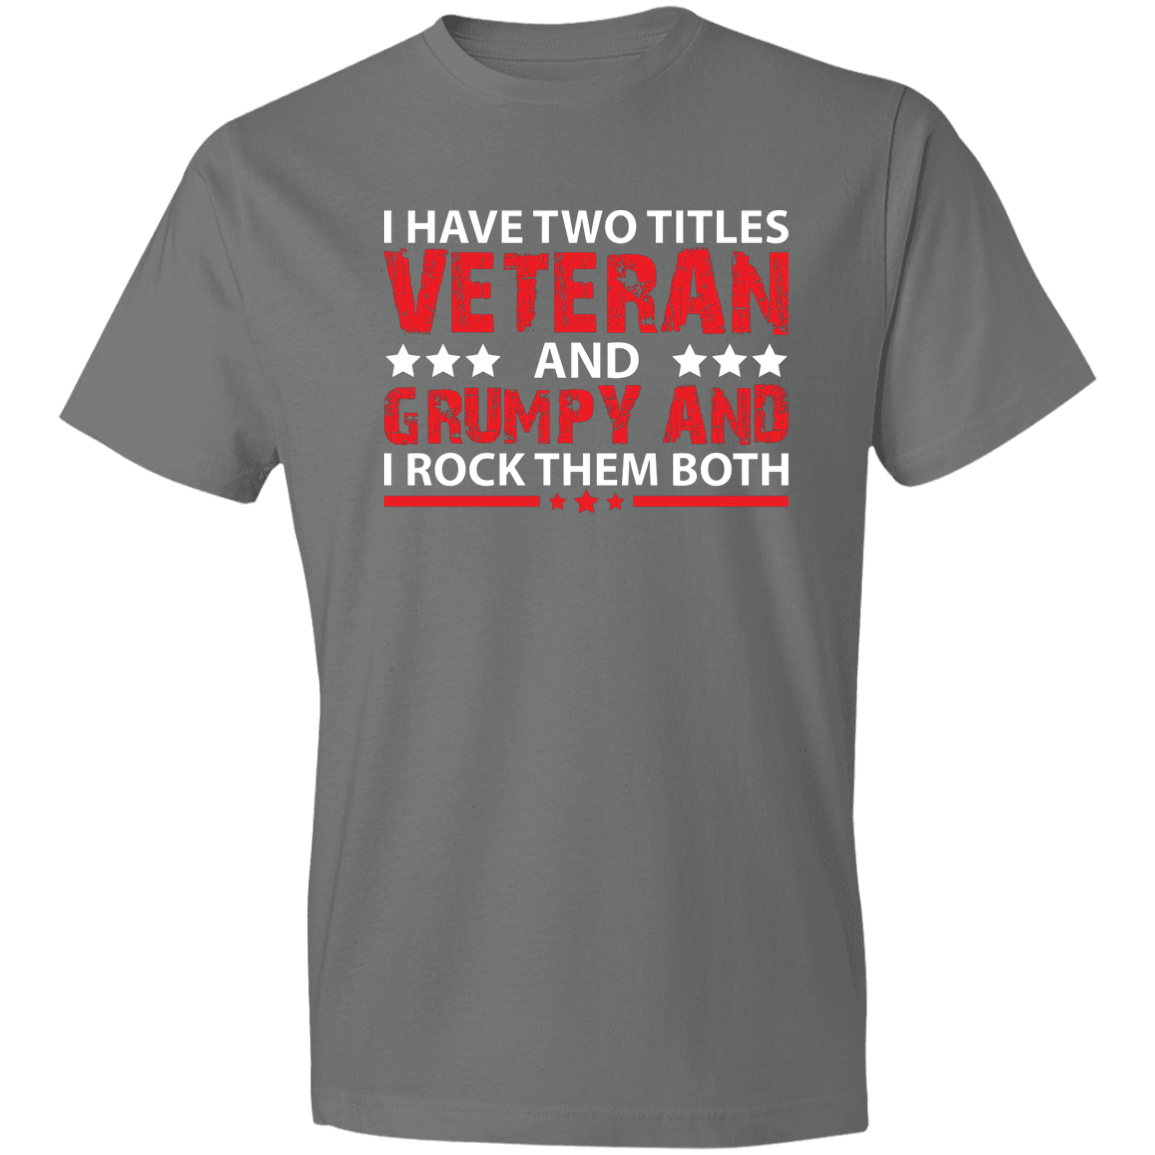 Grumpy Men's Lightweight T-Shirt 4.5 oz